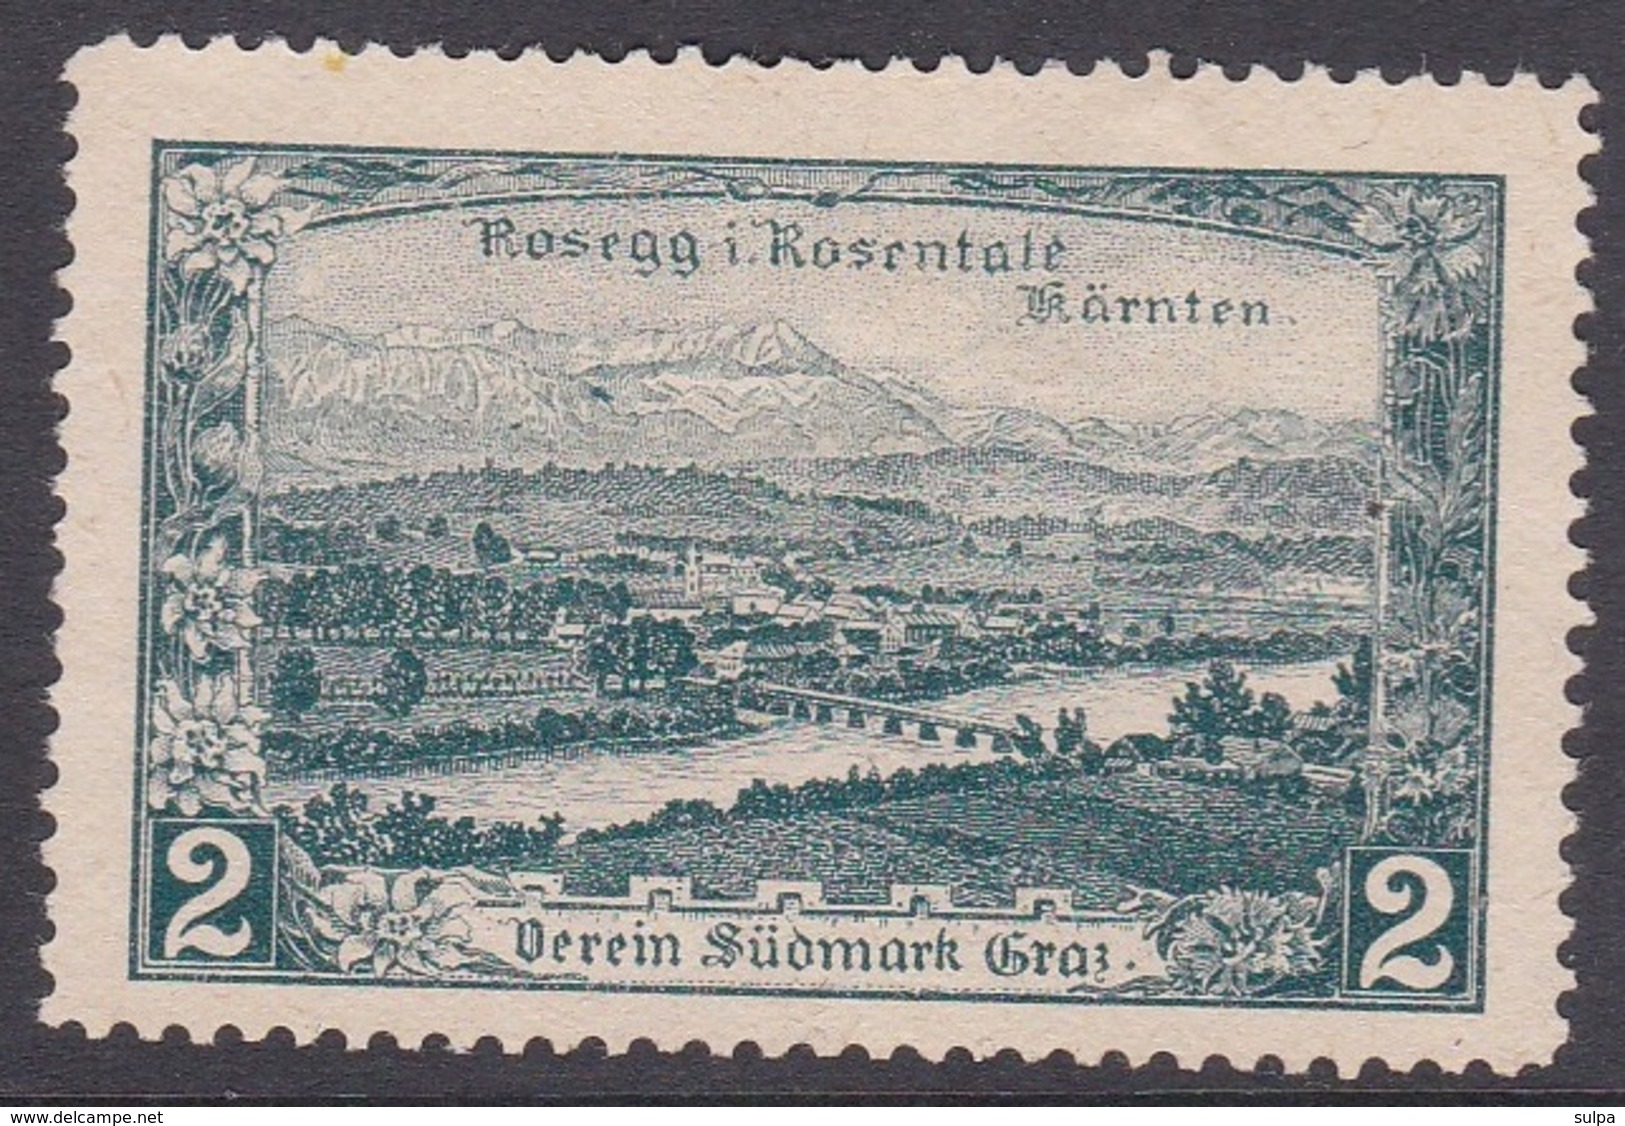 Rosegg I. Rosentale, Verein Südmark, Graz, Spendevignette - Vignetten (Erinnophilie)